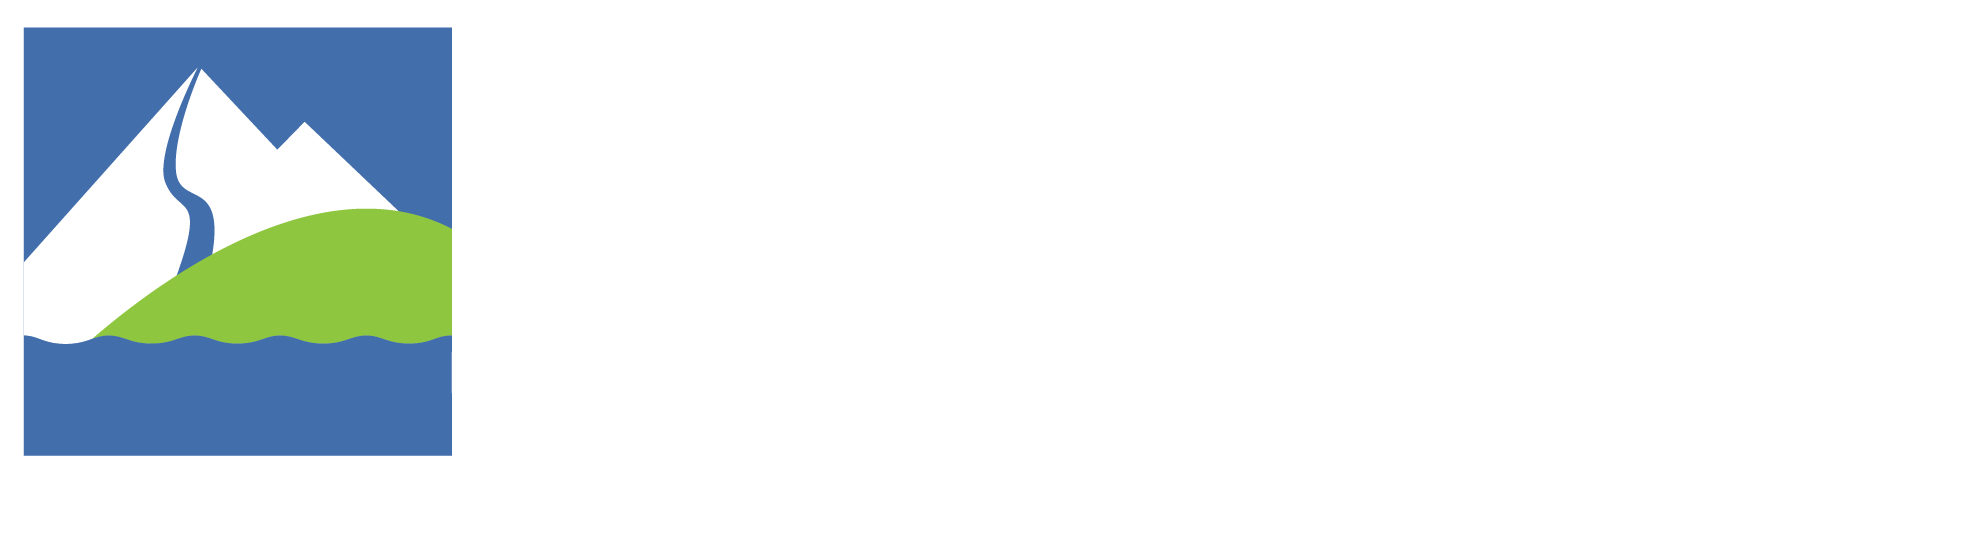 Logotipo de Zell am See / Kaprun